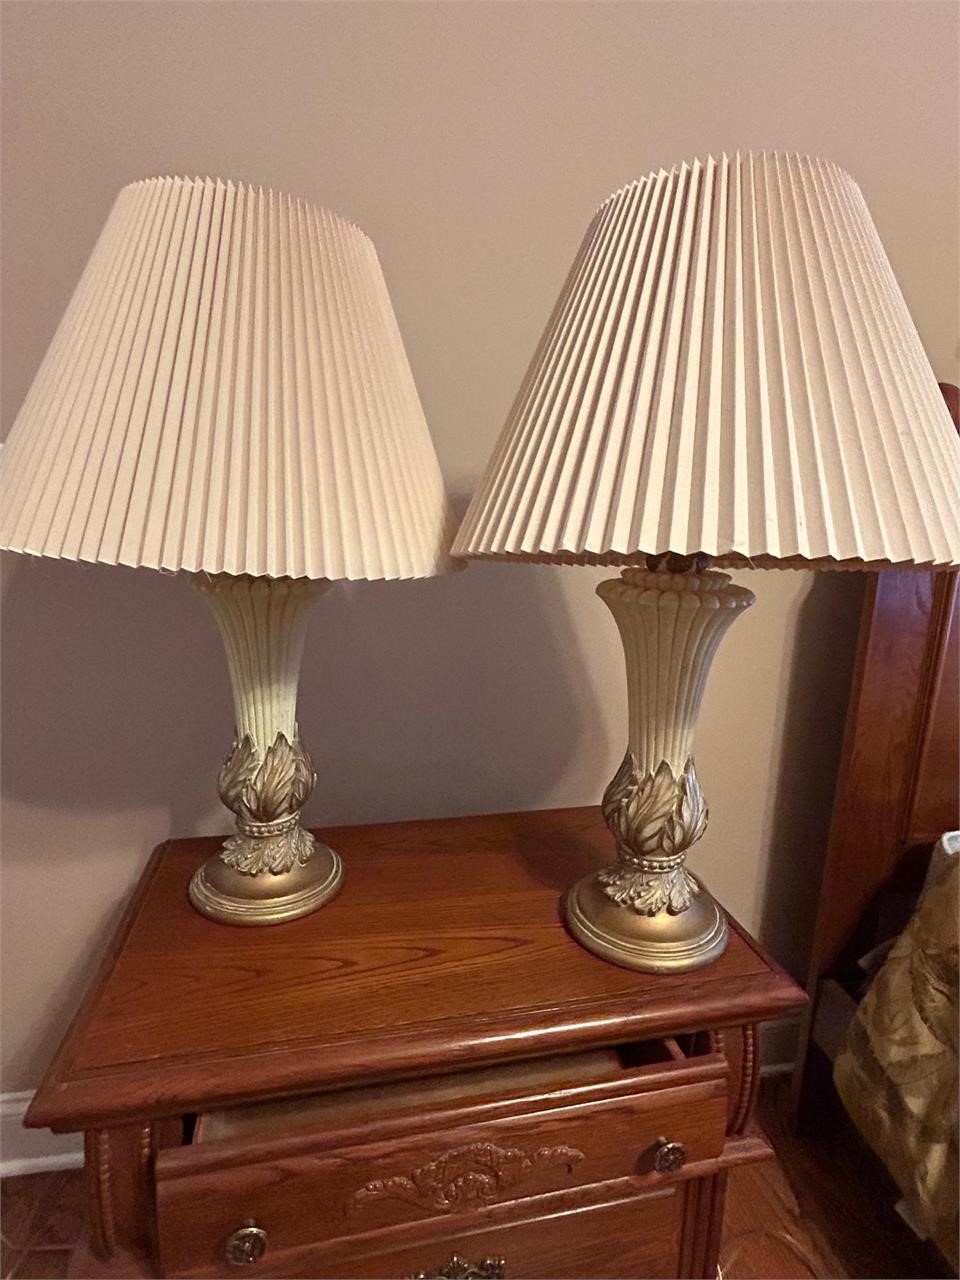 Vintage porcelain table lamps